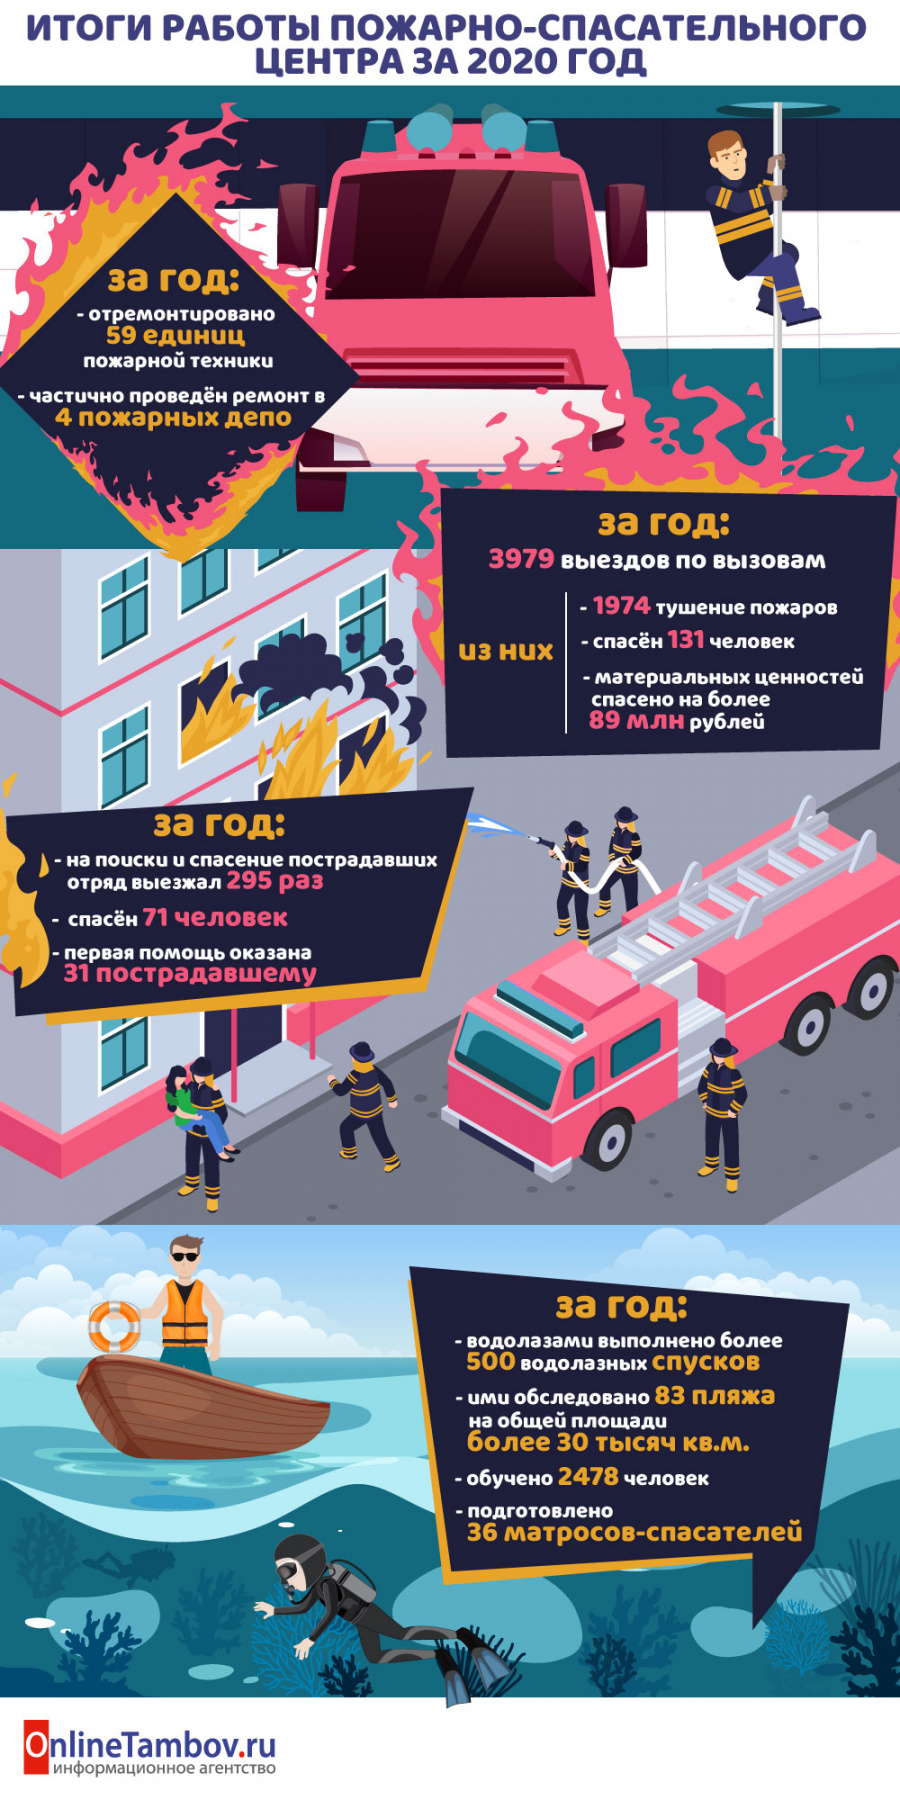 Итоги работы Пожарно-спасательного центра за 2020 год